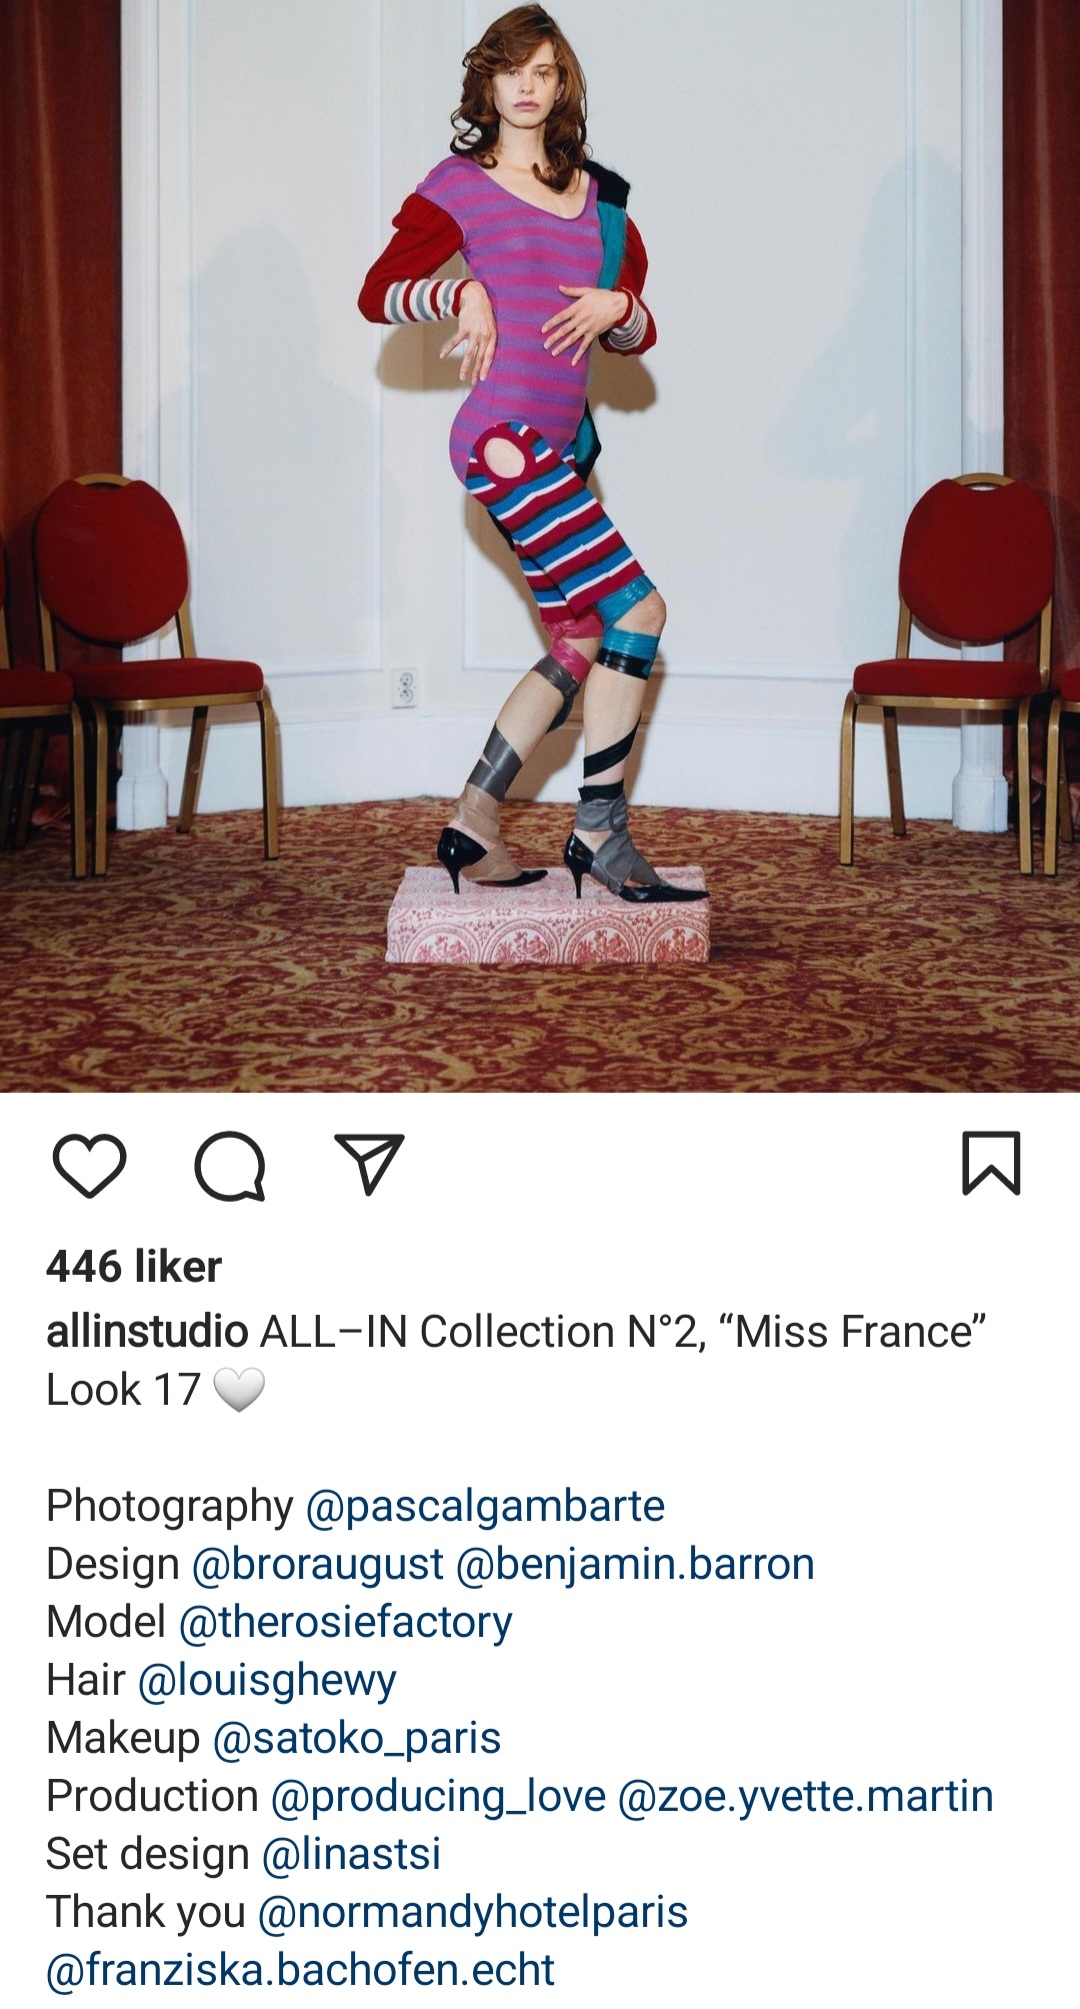 ALL-IN er en av klesdesignkollektivene som presenteres i boken "Fashions". Skjermdump fra Instagramkontoen deres.